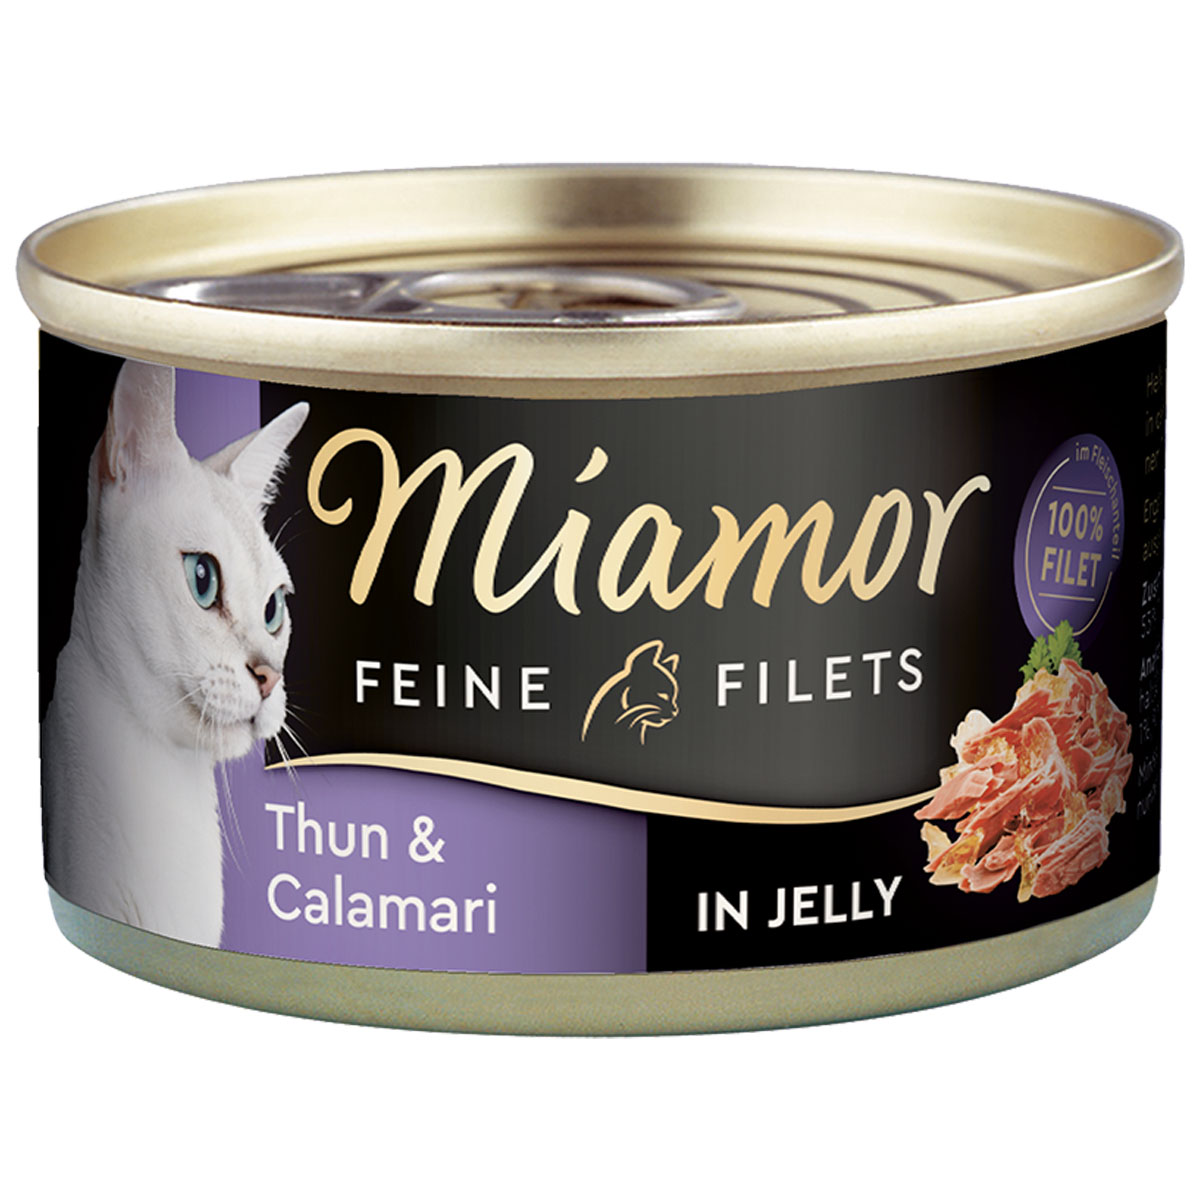 Miamor Feine Filets v želé s tuňákem a kalamáry